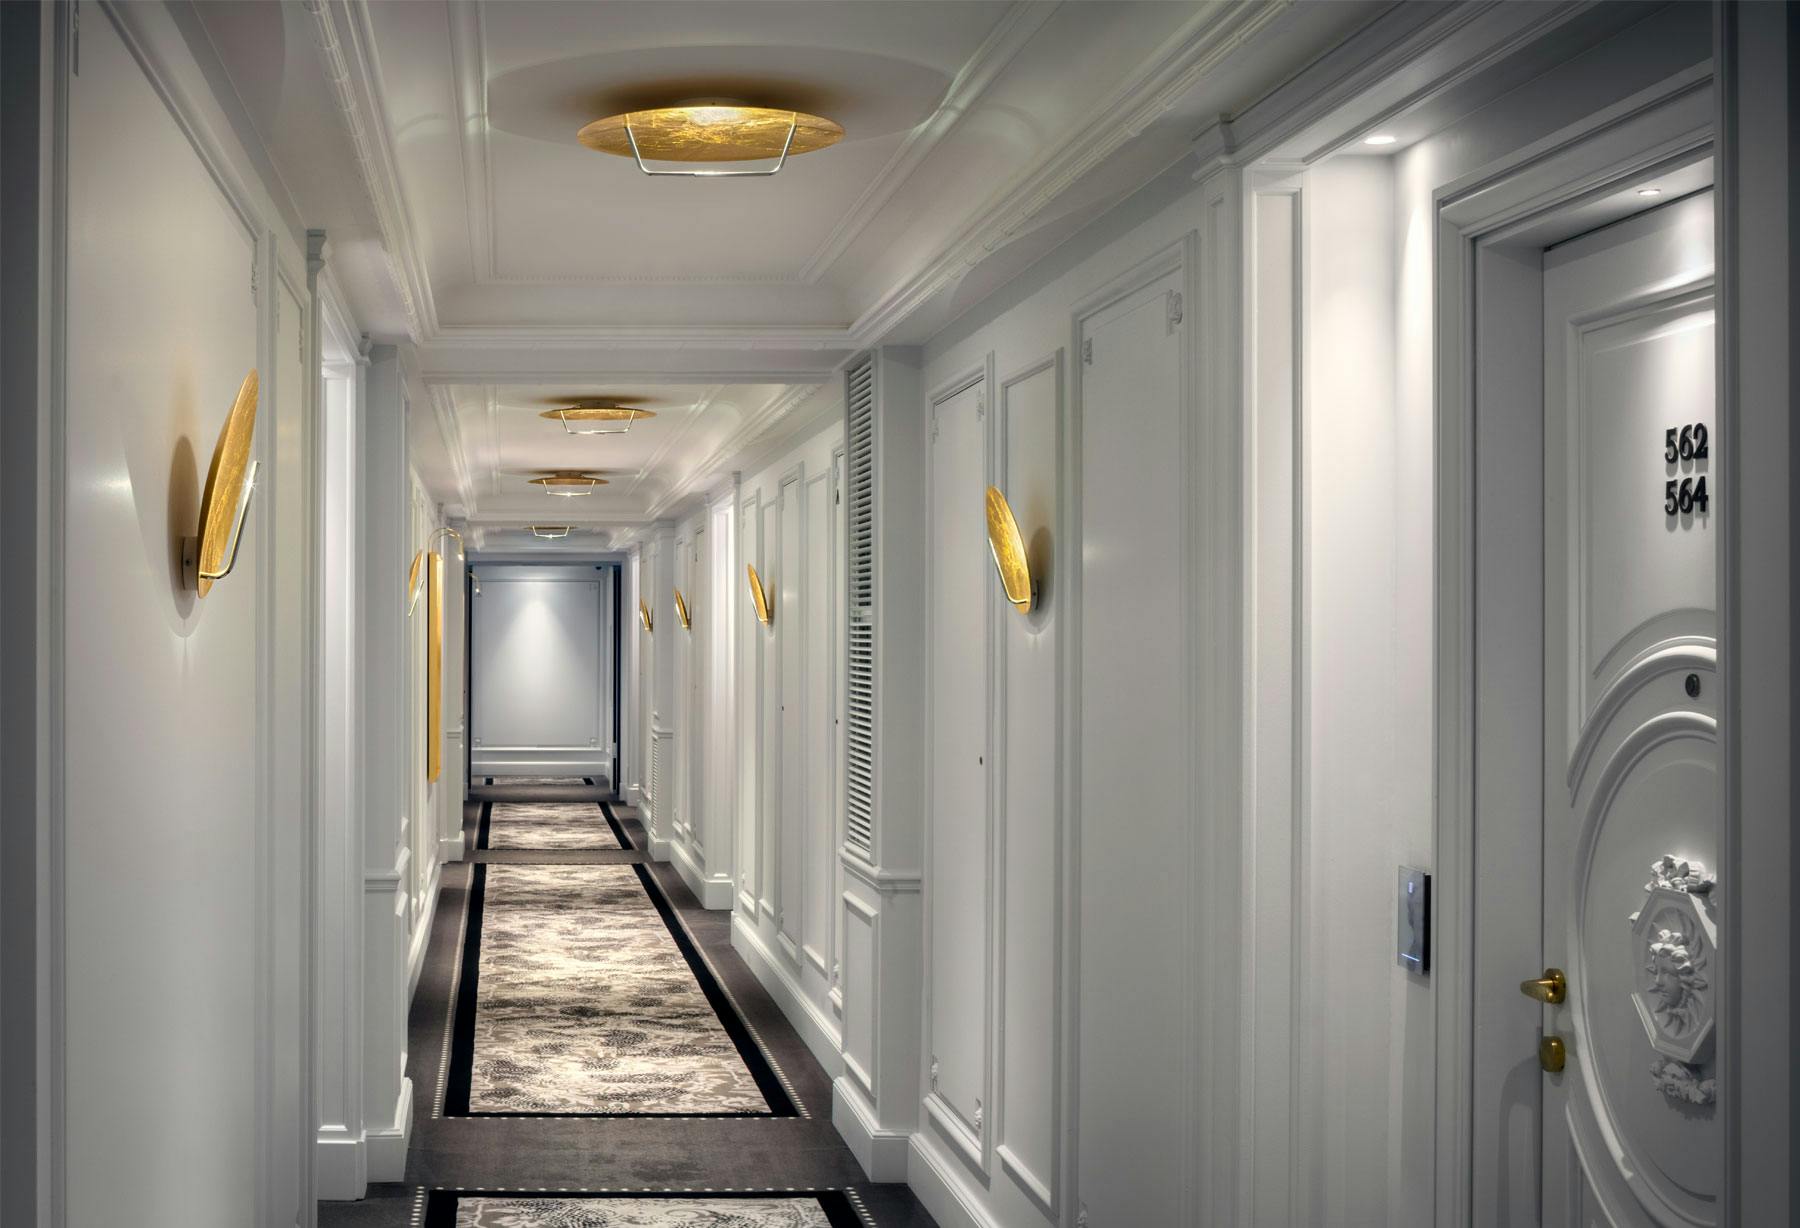 <p>Catellani &amp; Smith collabore avec l&#8217;hôtel de Paris à Monte-Carlo, dans la Principauté de Monaco, pour éclairer quelques-uns des espaces clés de l’un des hôtels les plus prestigieux au monde, tout juste rénové. Le choix s’est porté sur la lampe « Disco » dans sa version LED et sur un modèle personnalisé de « Luna LED » dans sa version applique murale.</p>
